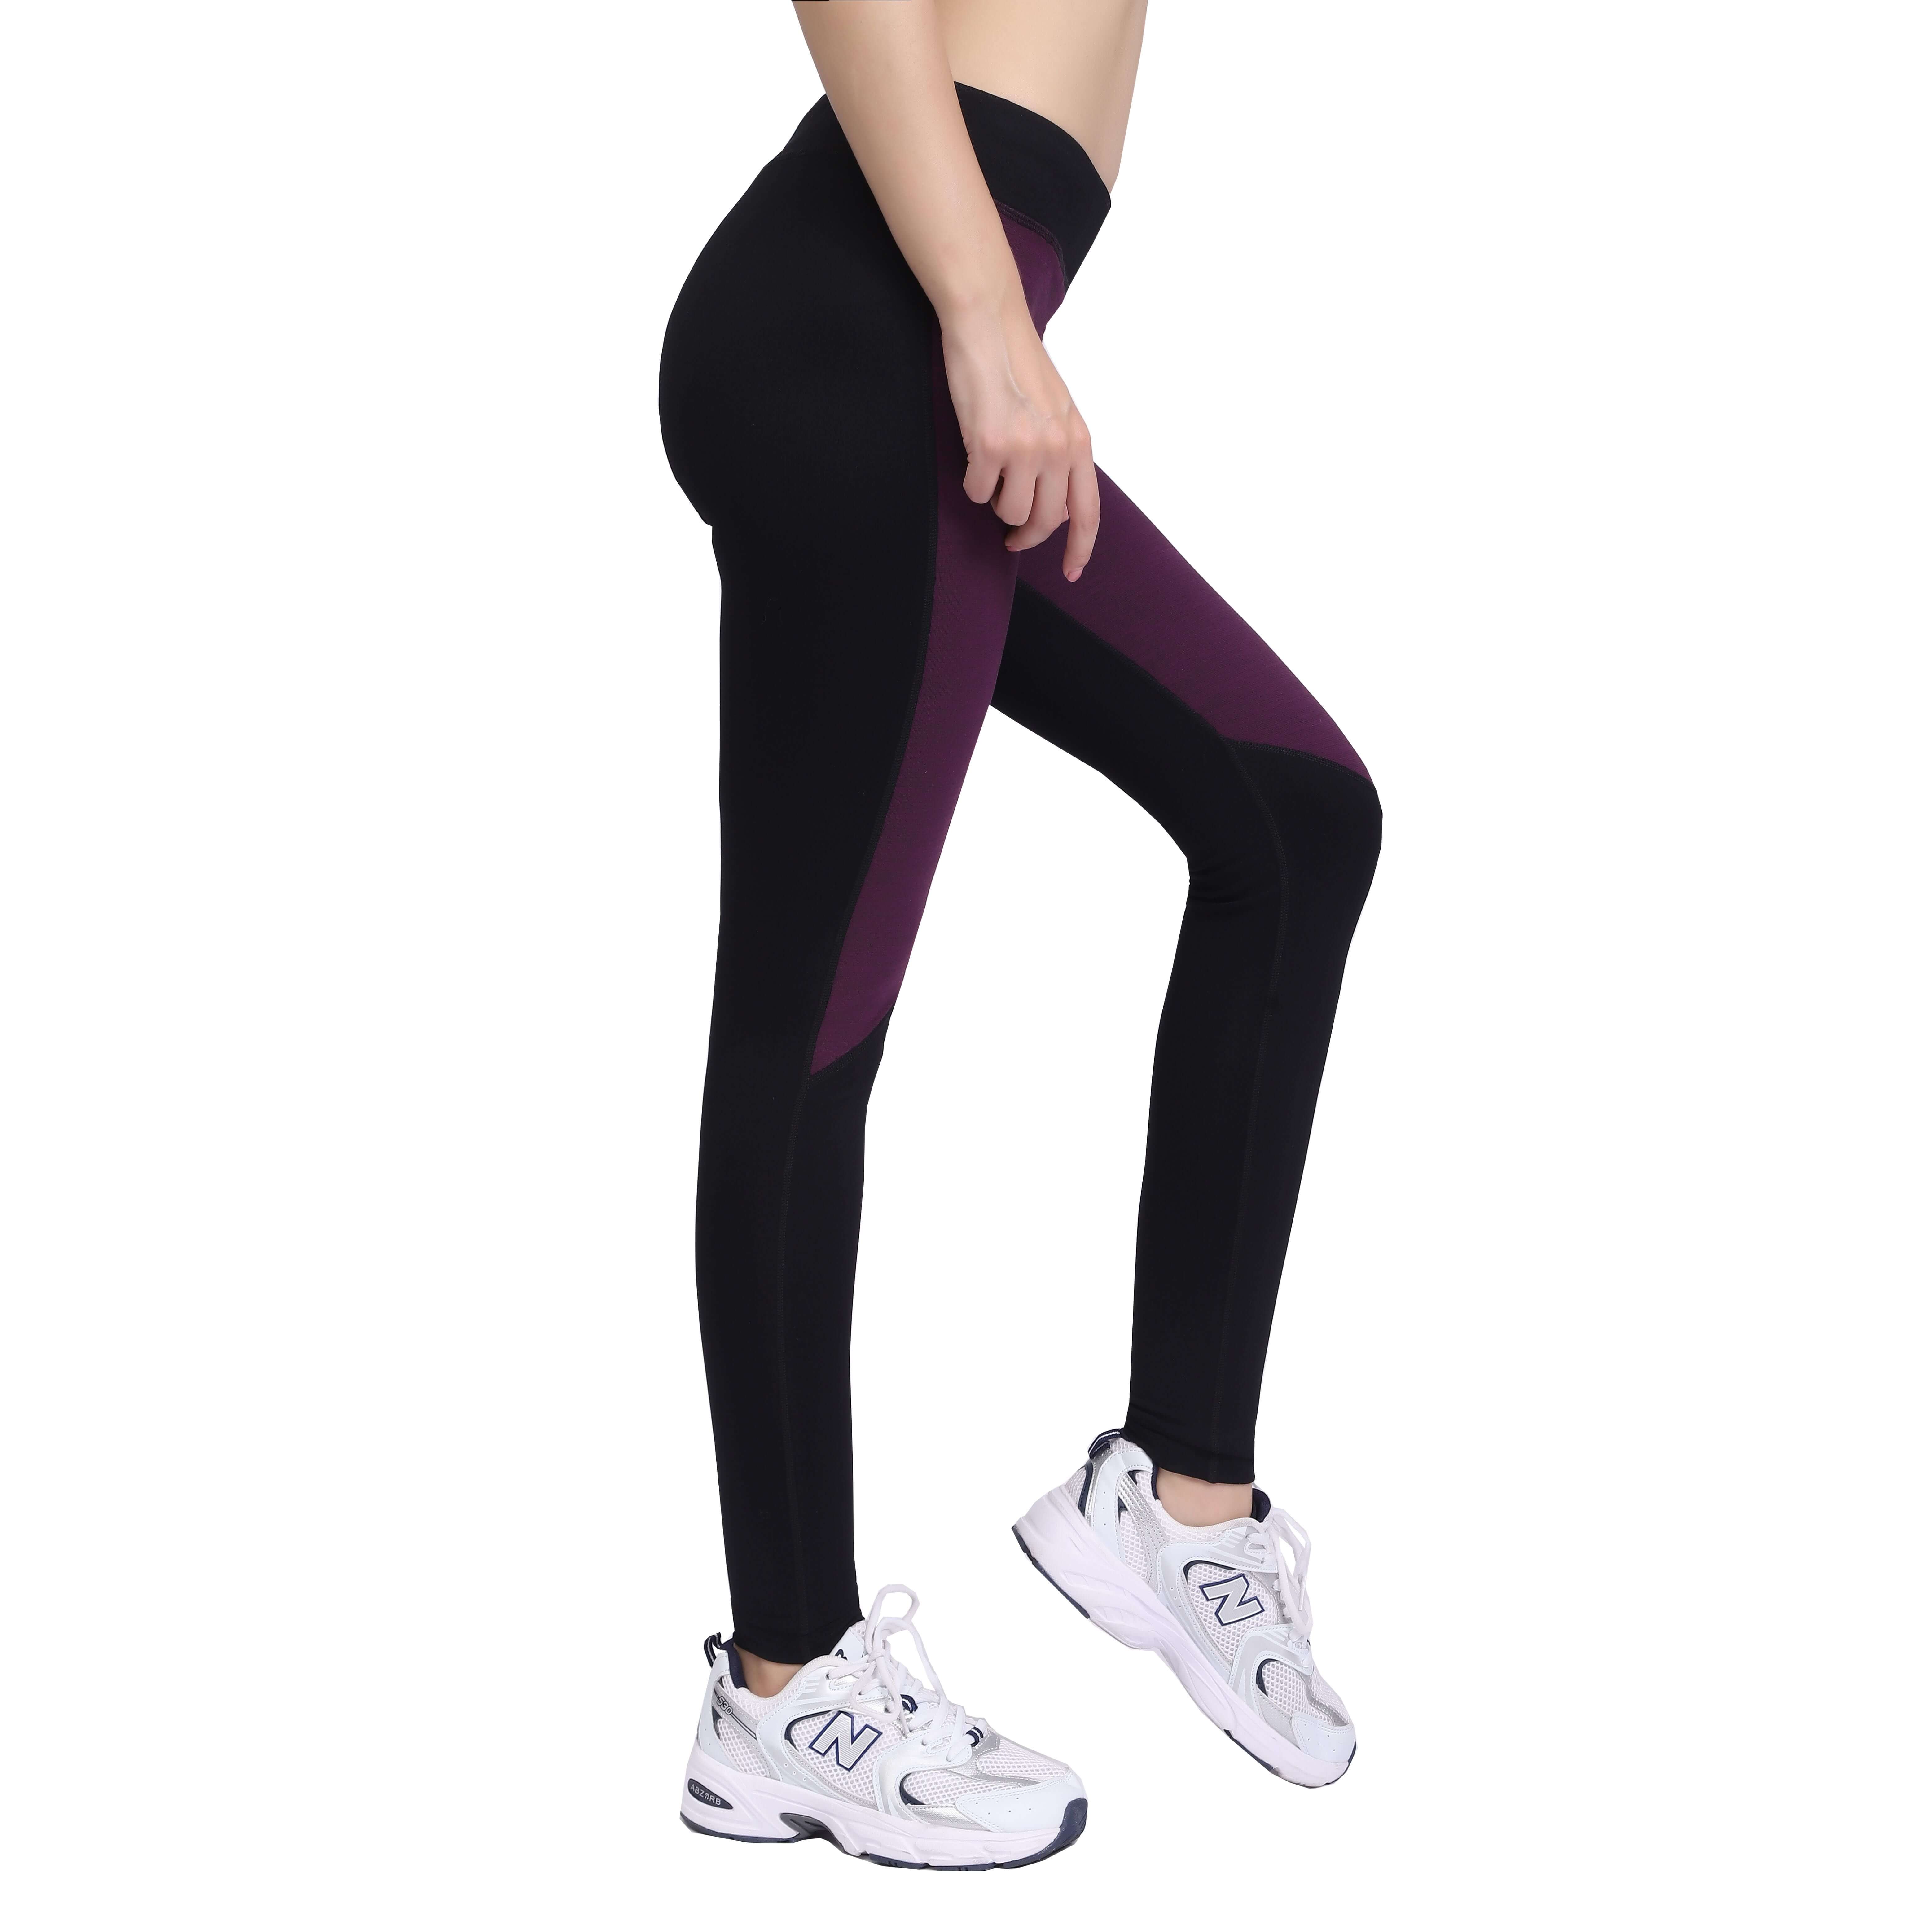 Женские спортивные штаны для бега, леггинсы для тренировок, йоги, тайтсы для фитнеса